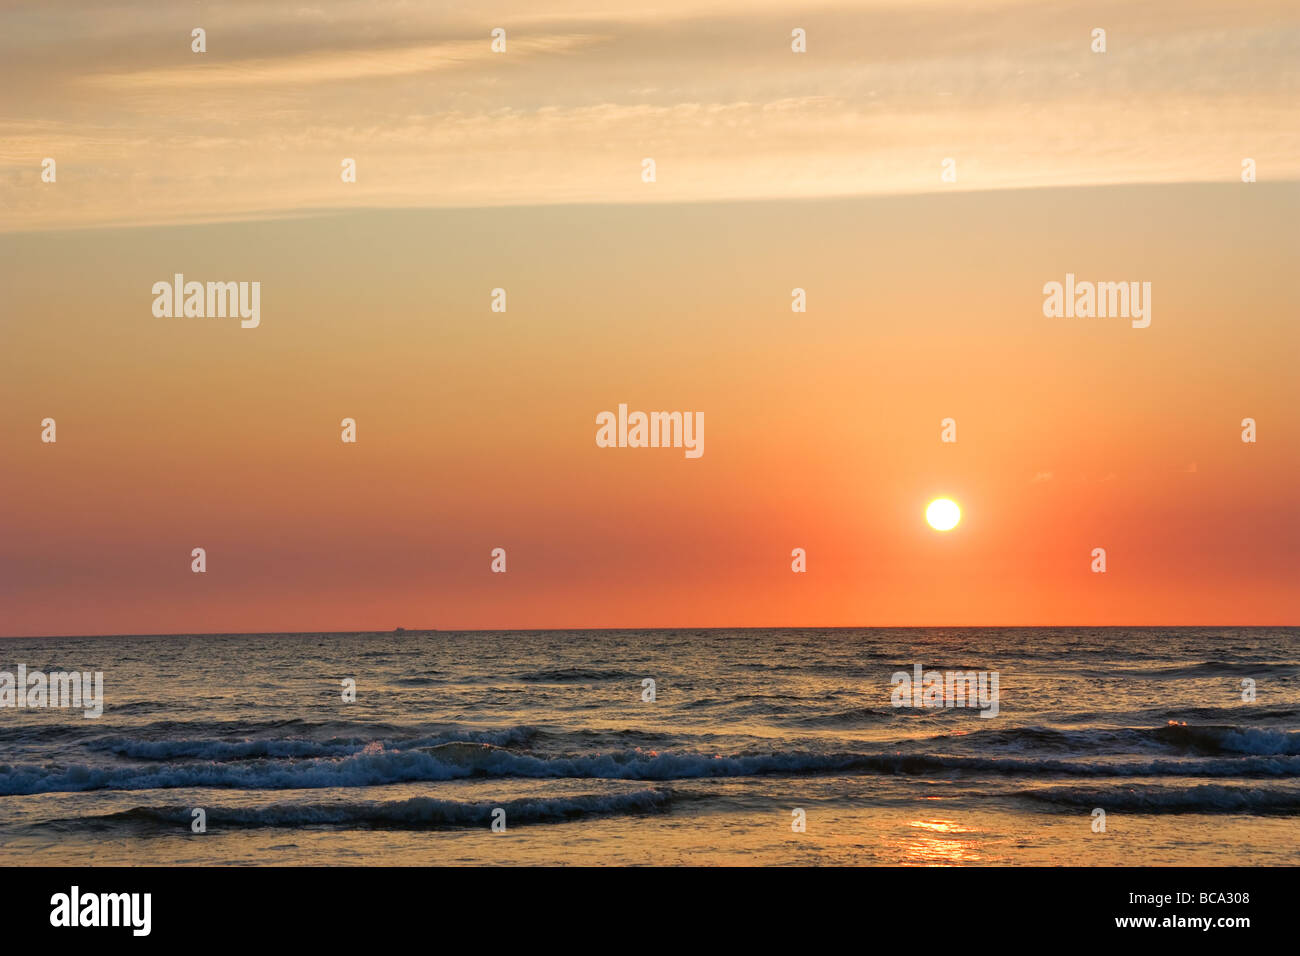 sunset at Sea Stock Photo